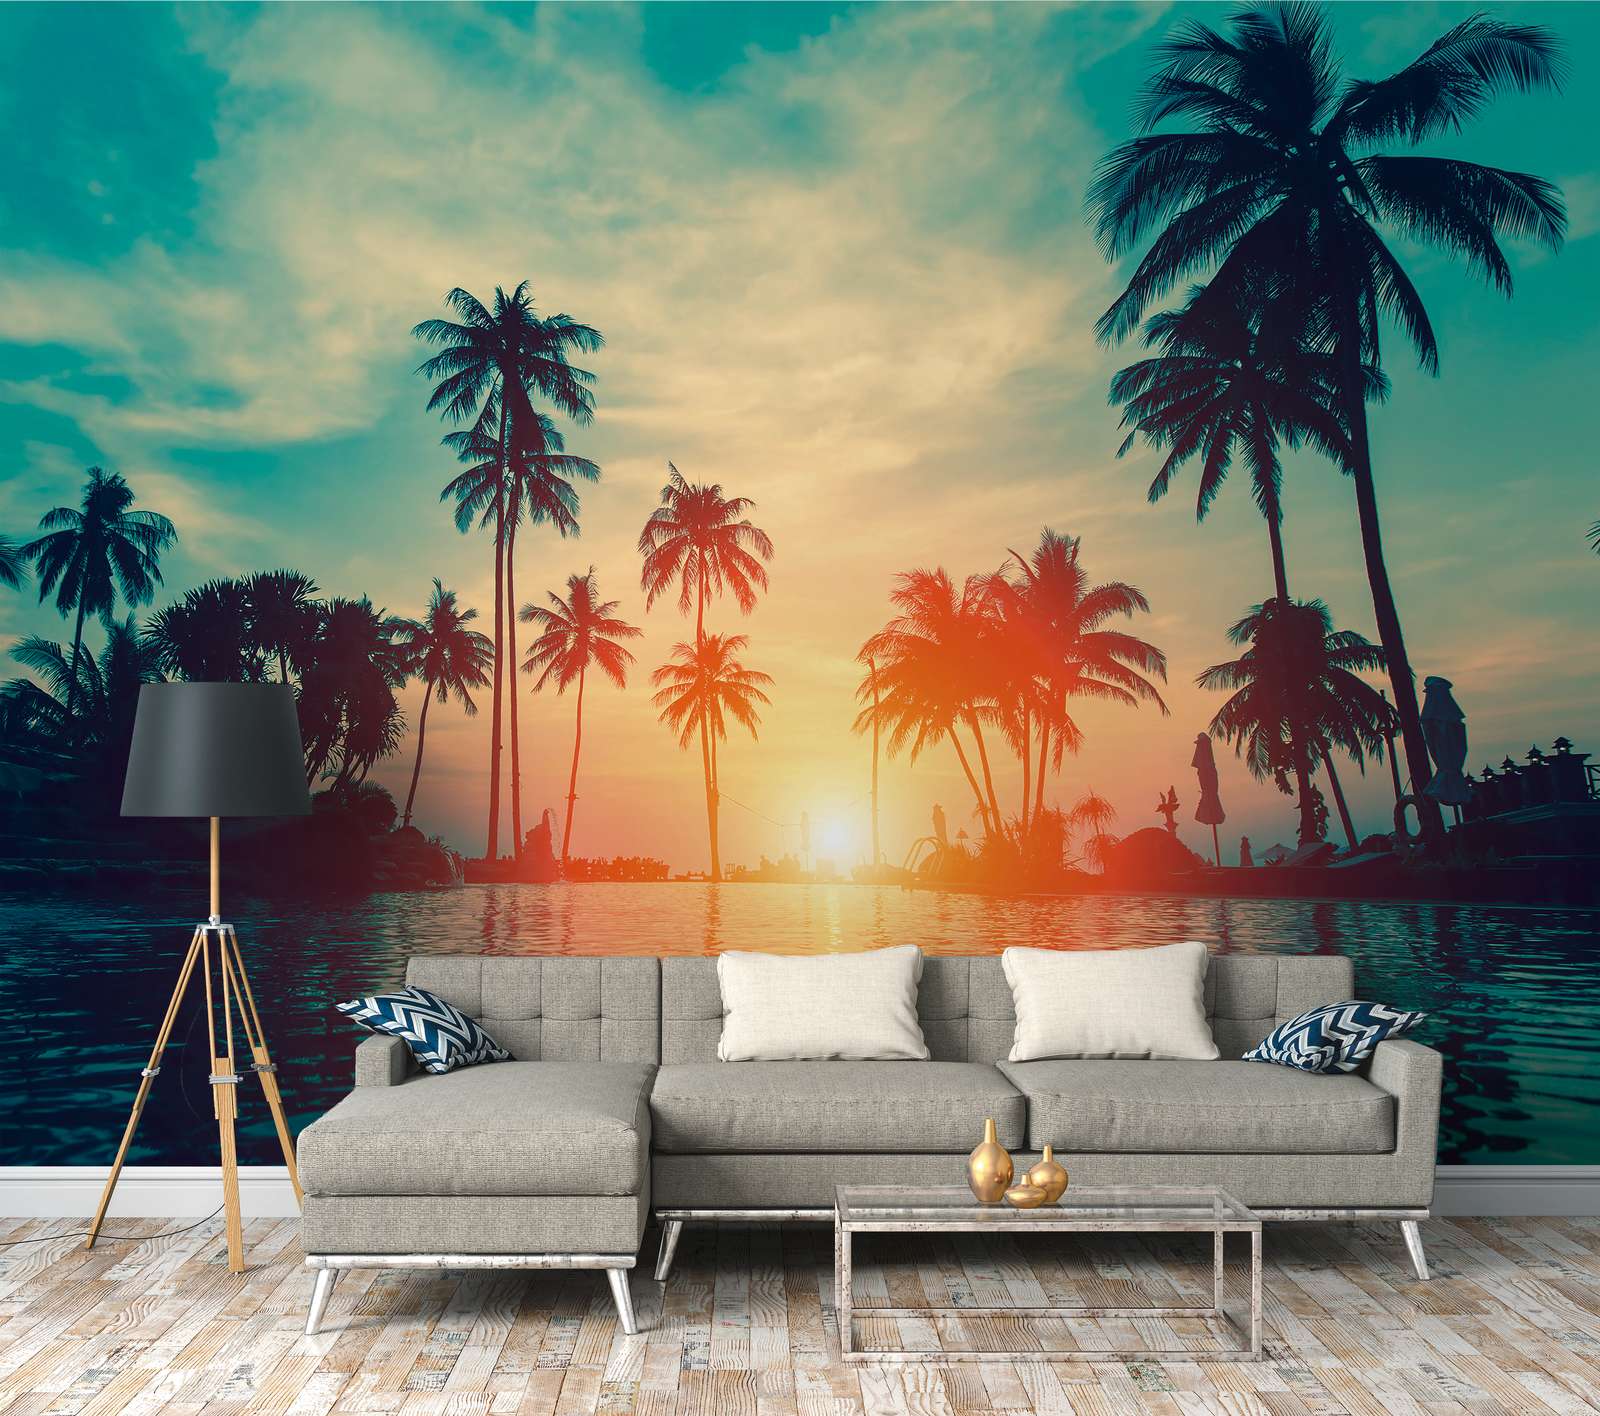             Papier peint panoramique avec des palmiers au bord de l'eau au coucher du soleil - bleu, orange, noir
        